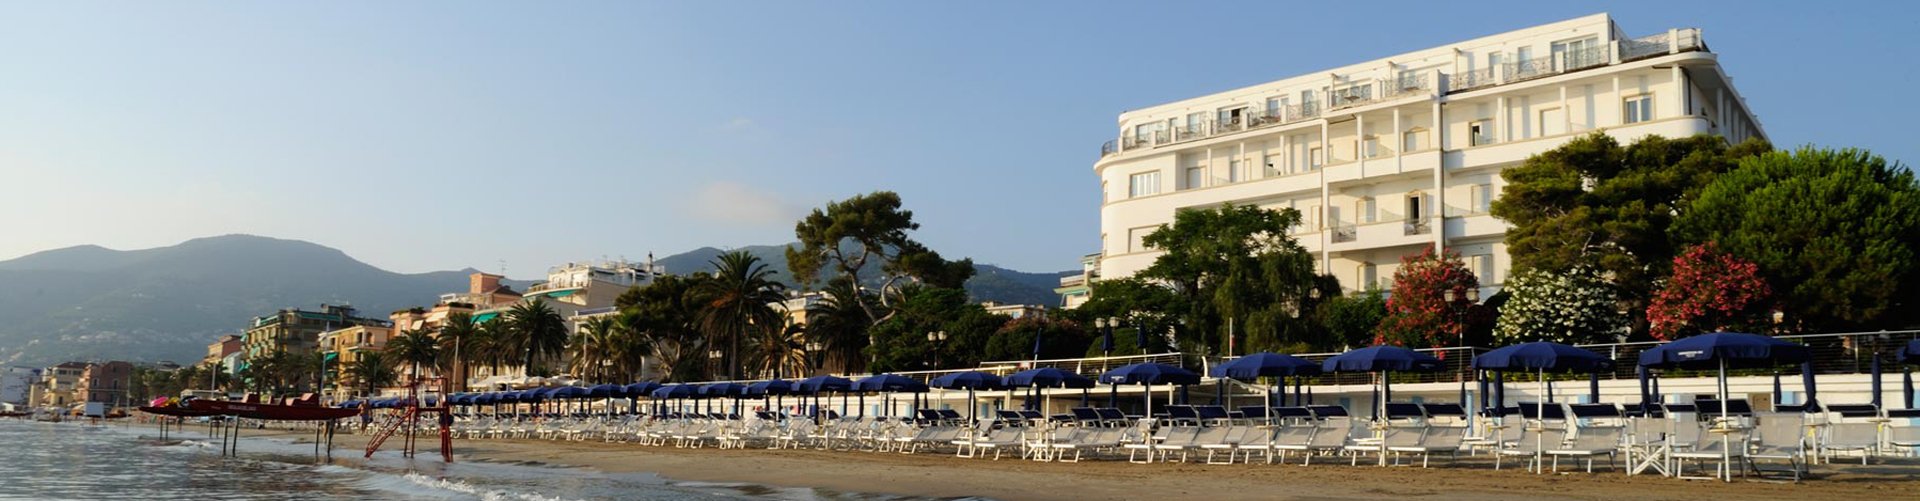 Banner Hotel Mediterranee in Alassio